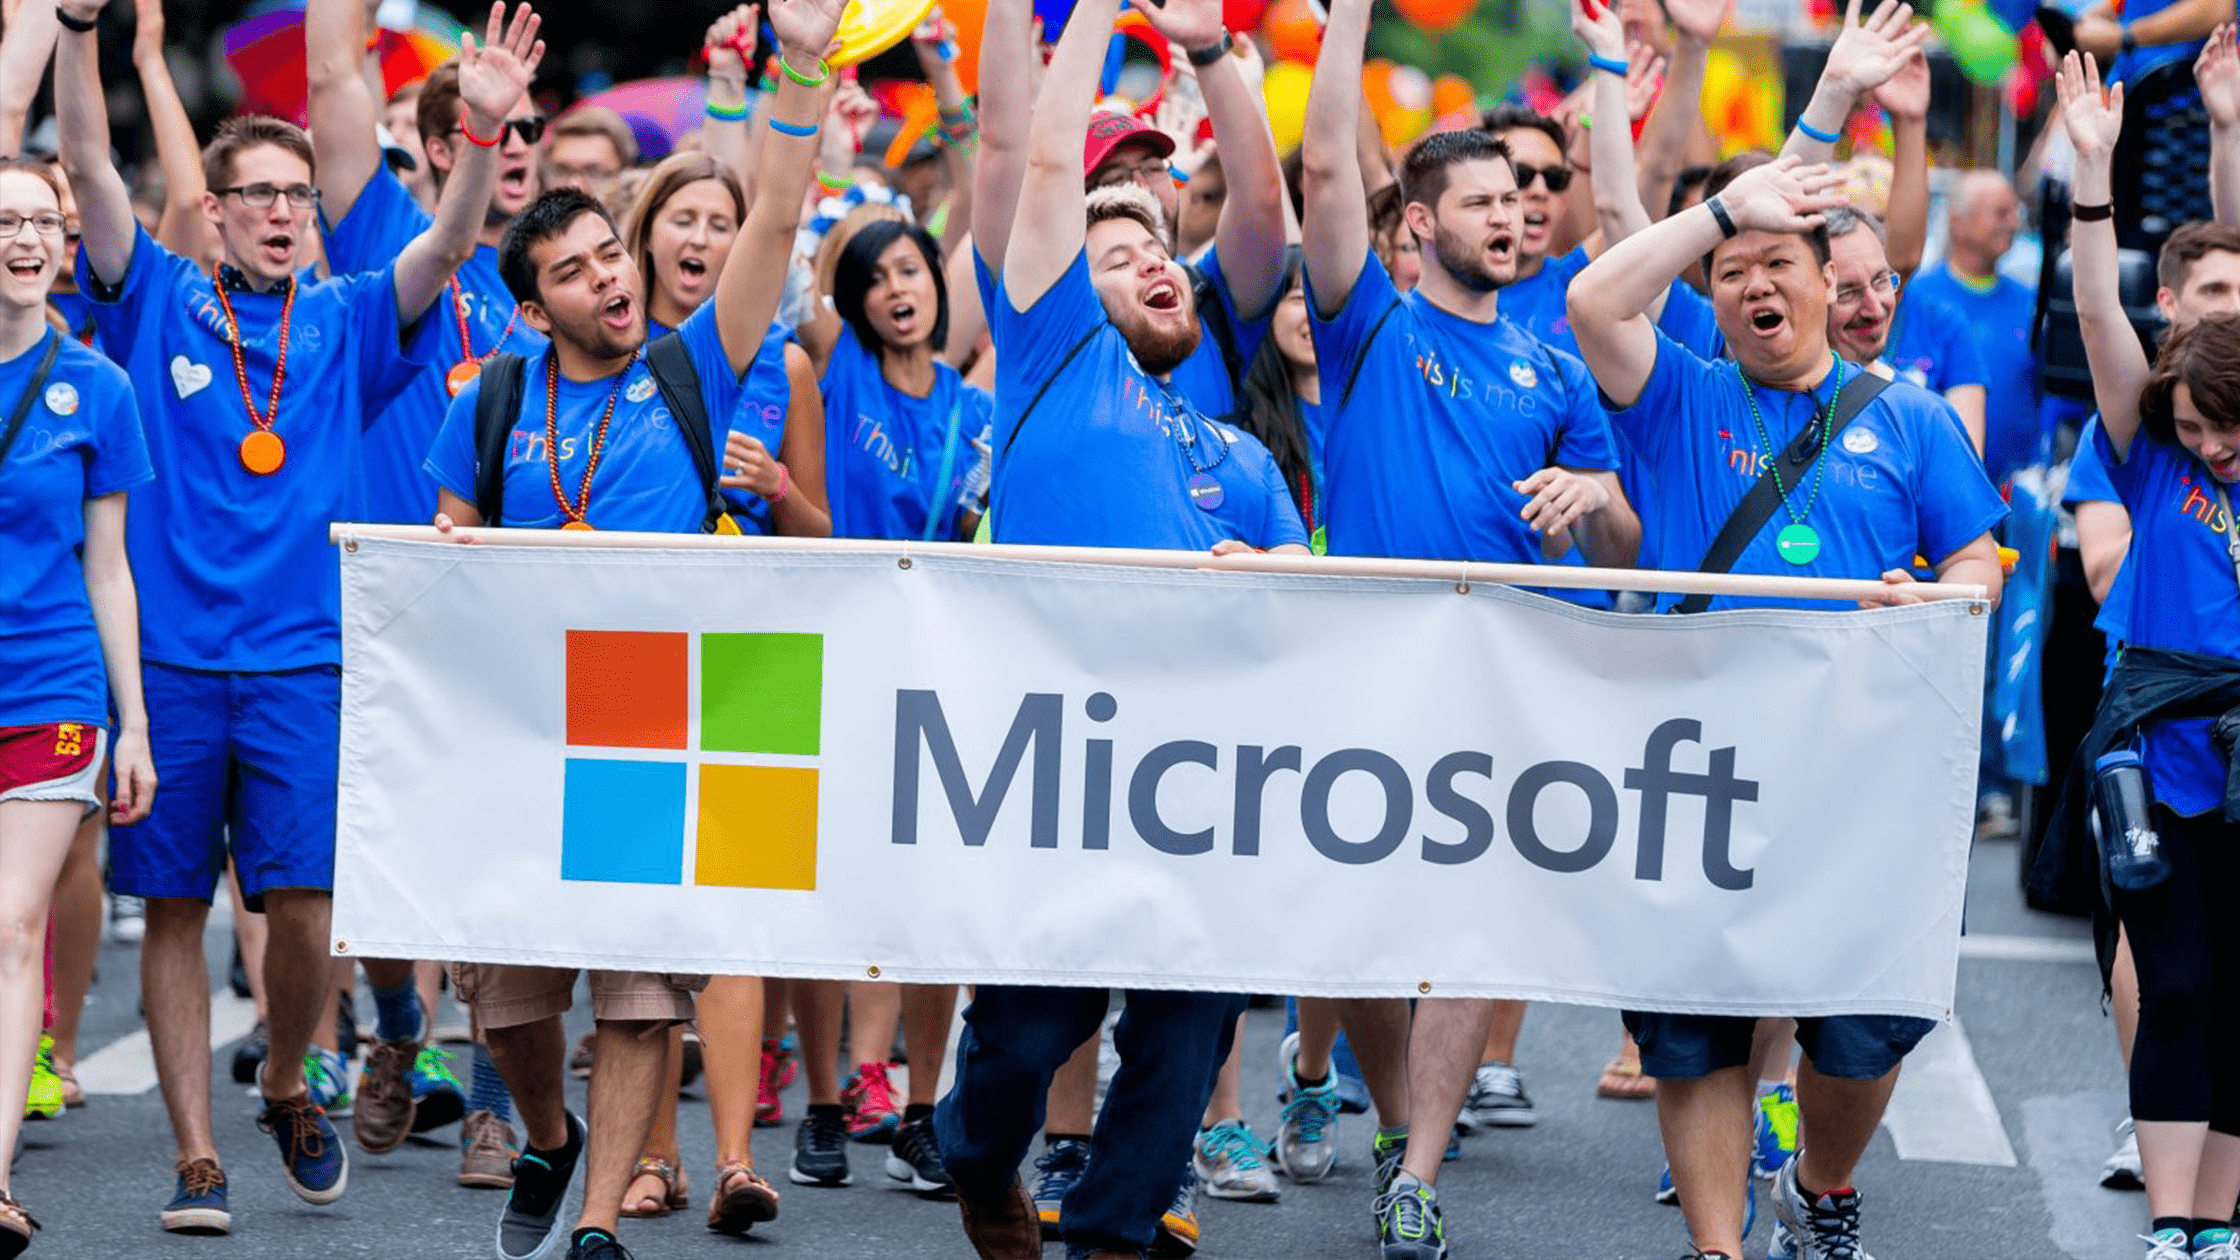 Dipendenti Microsoft marciano con striscione